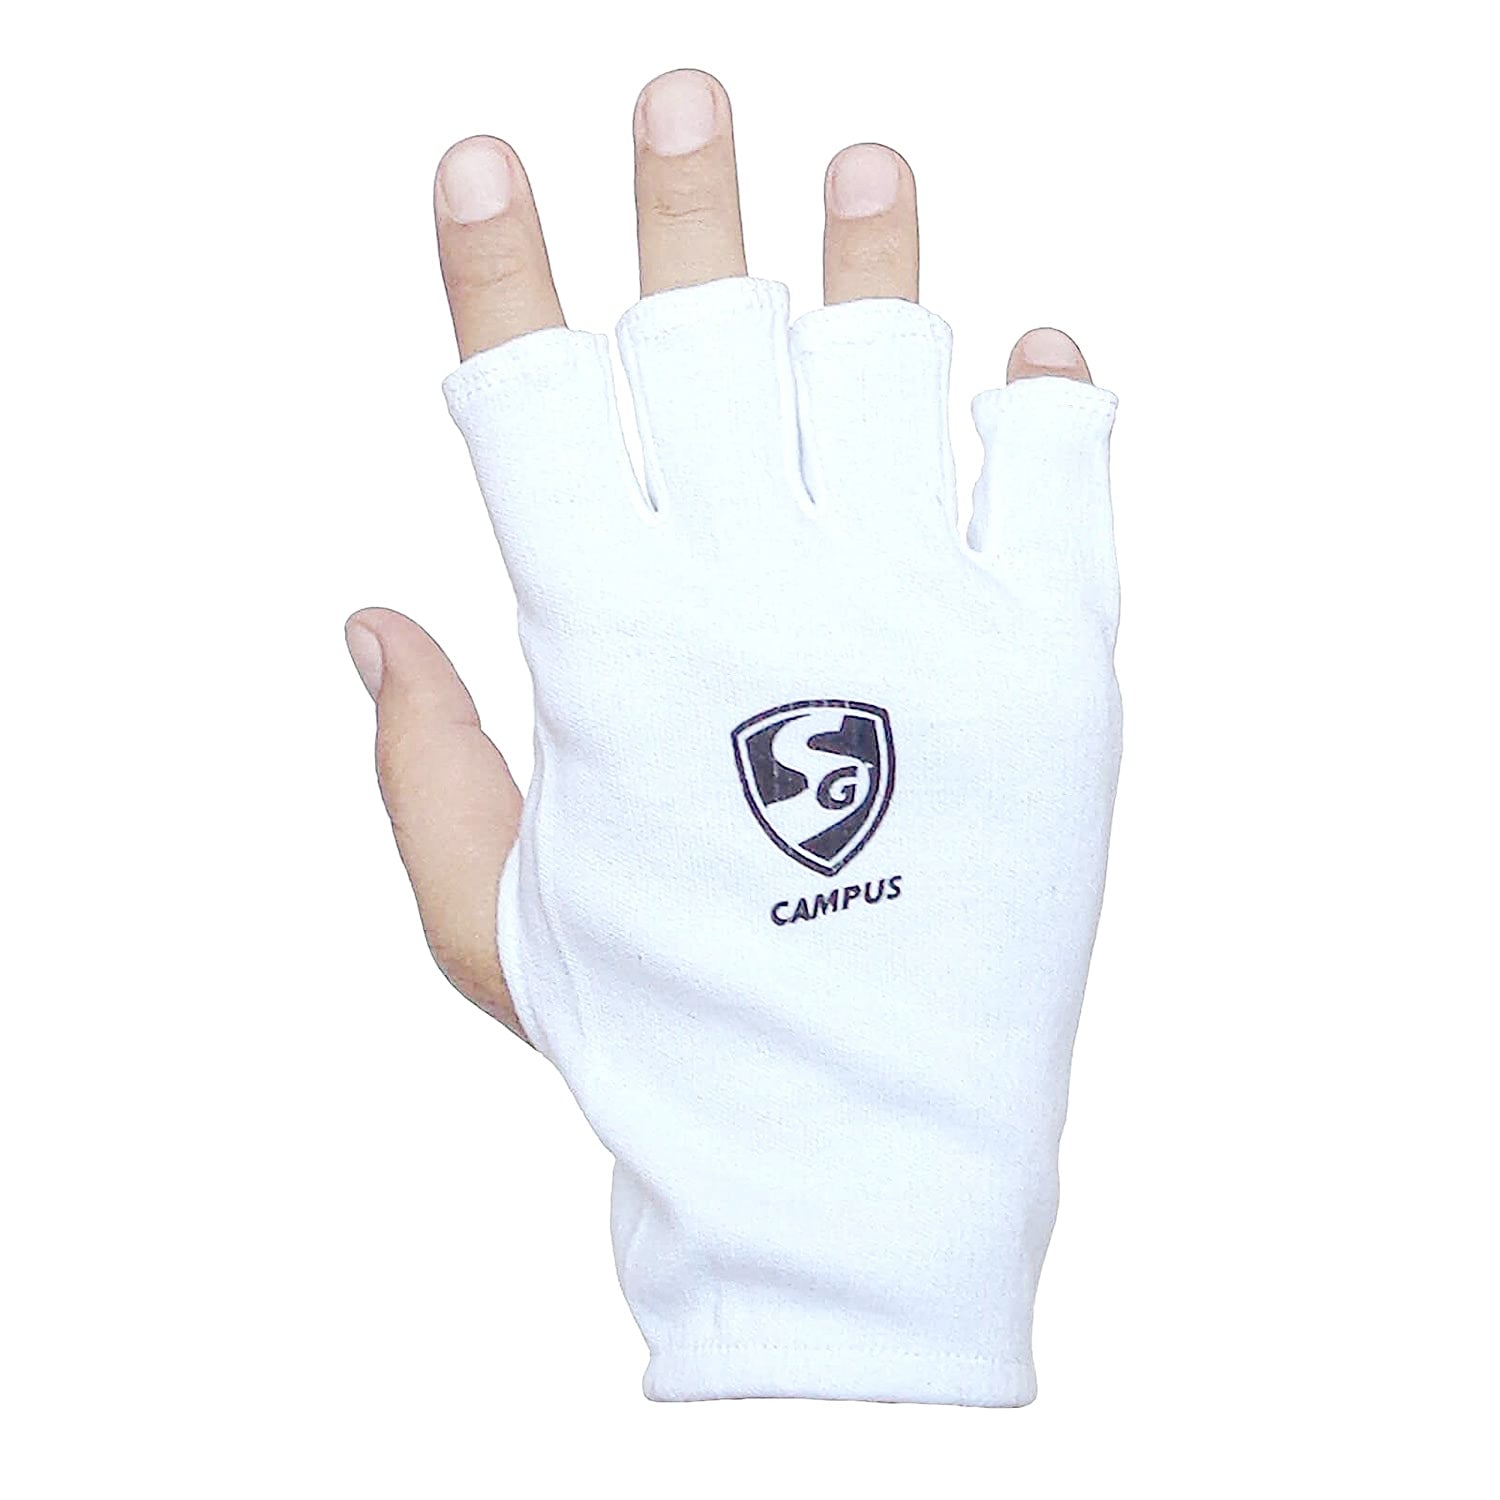 SG Campus Inner Gloves - Best Price online Prokicksports.com